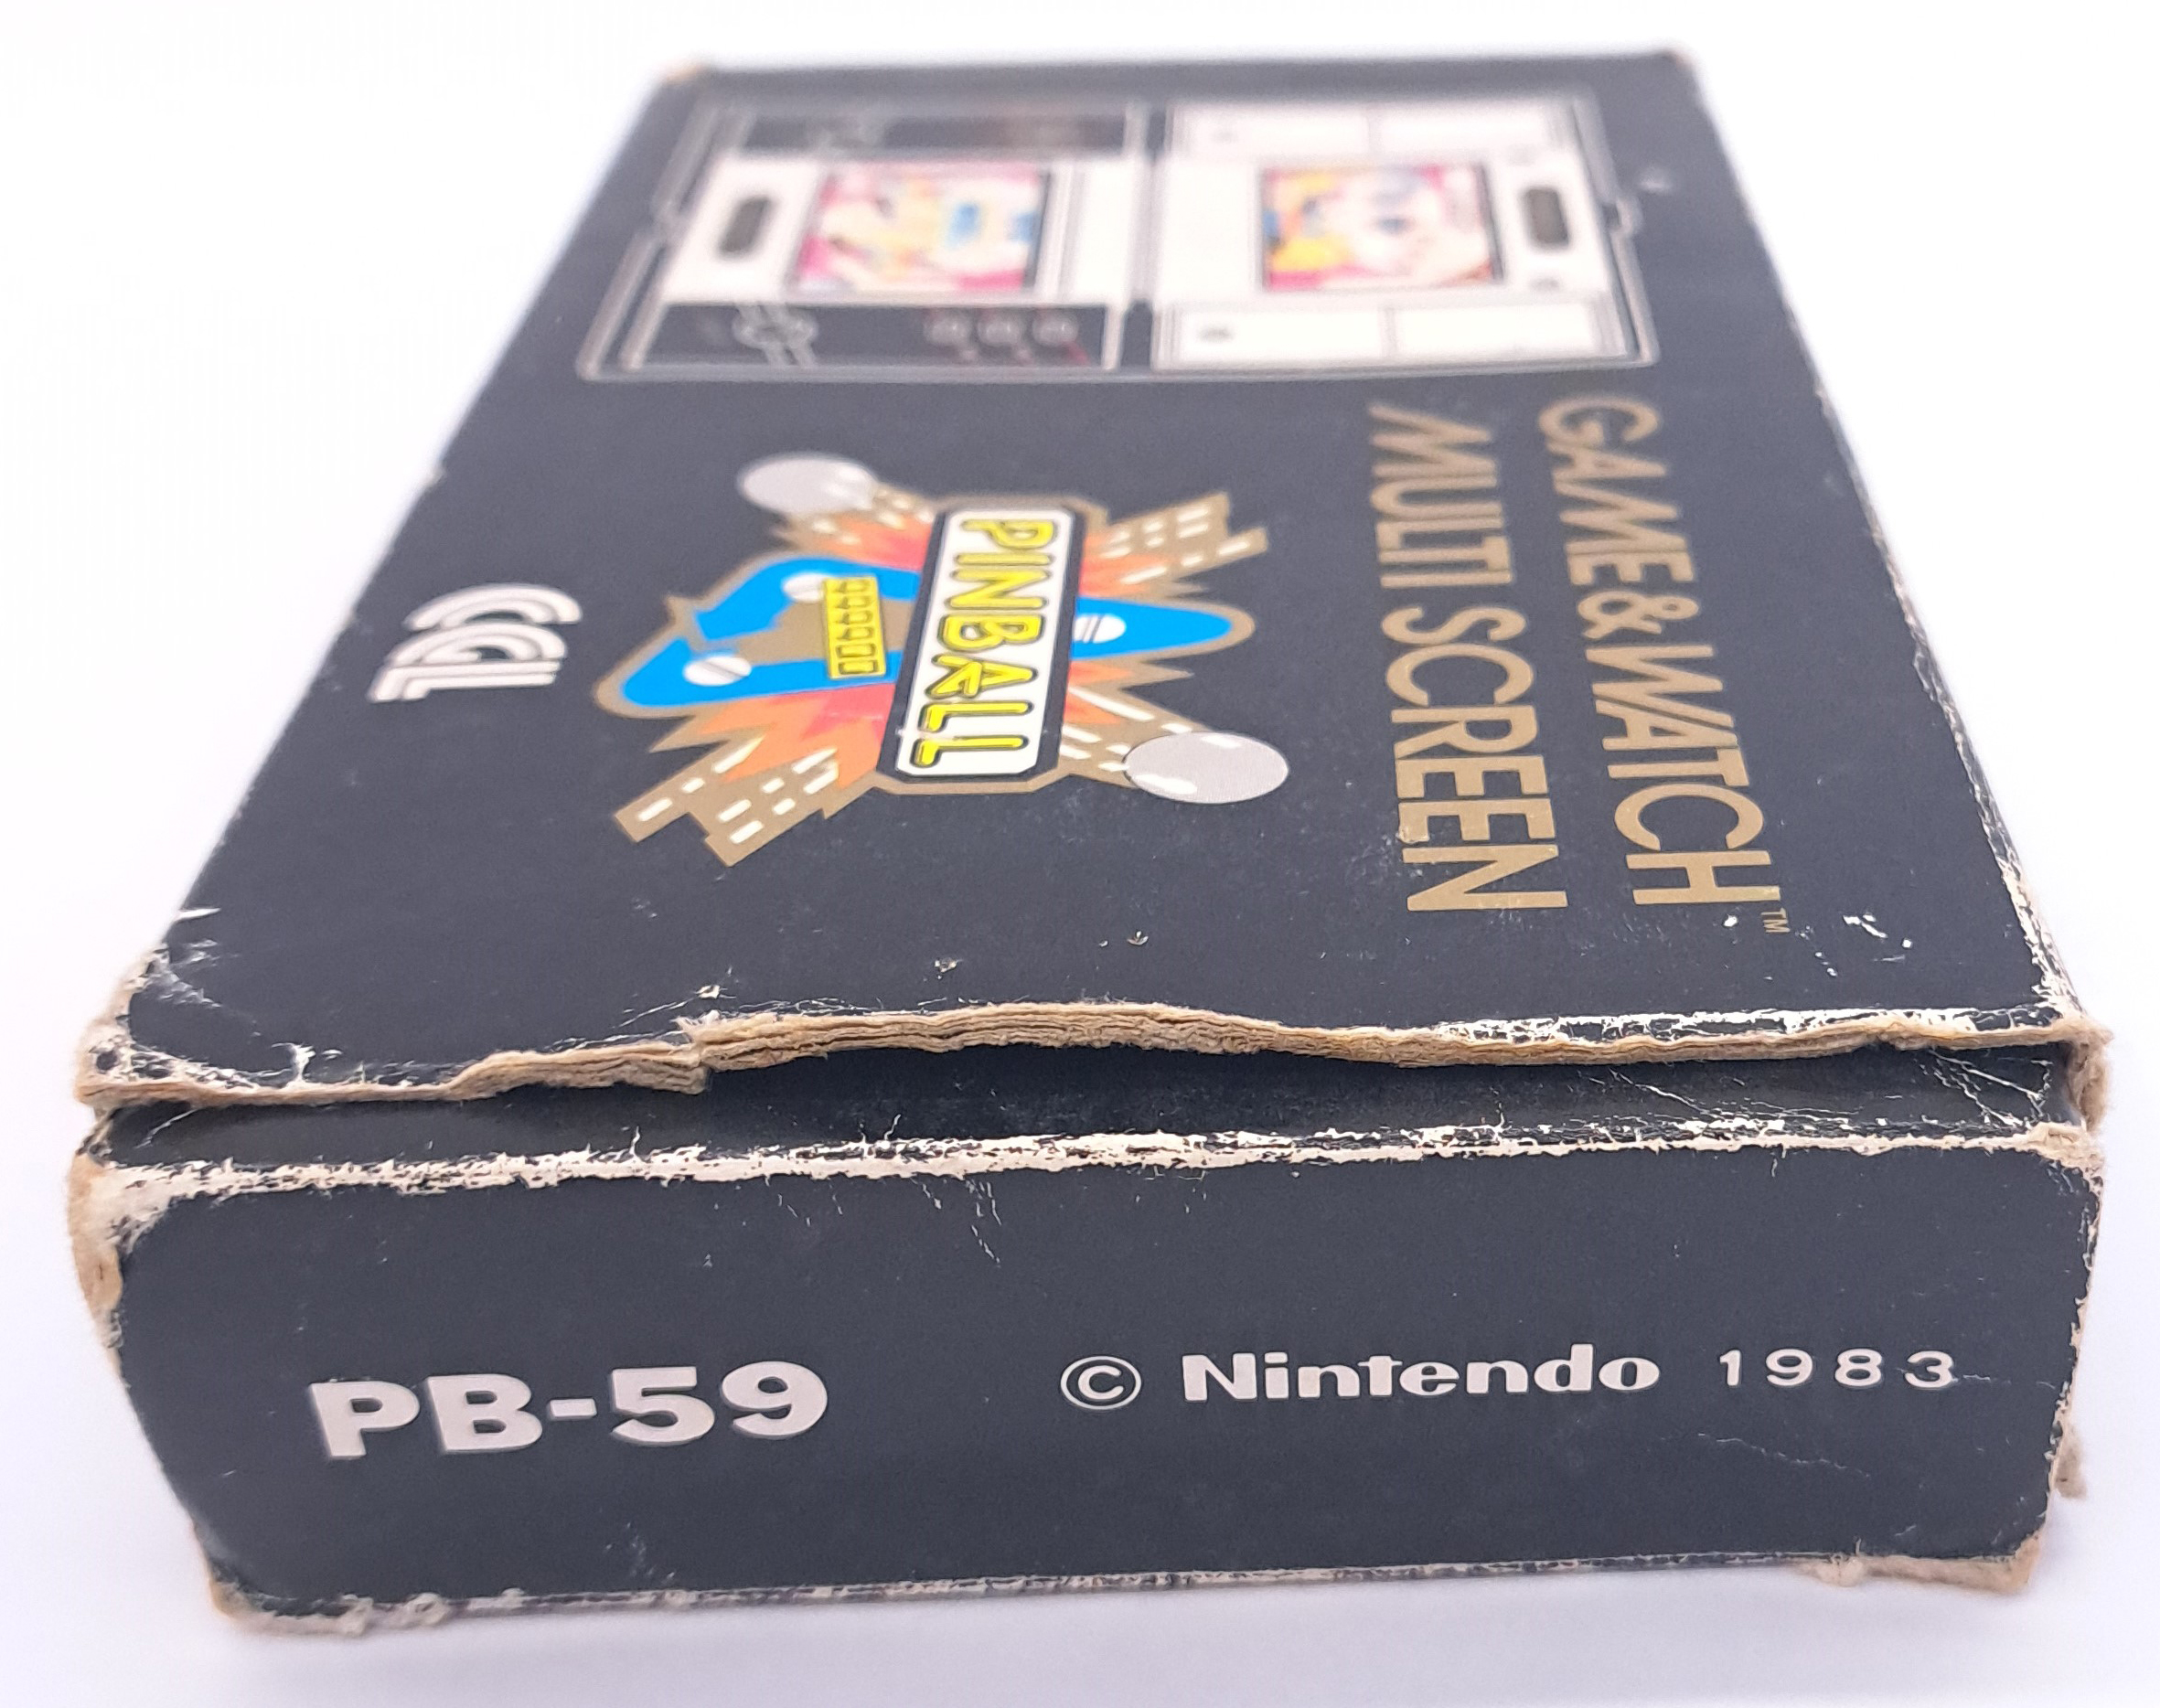 Vintage/Retro Gaming. Nintendo Game & Watch, boxed PB-59 “Pinball” - Image 11 of 12